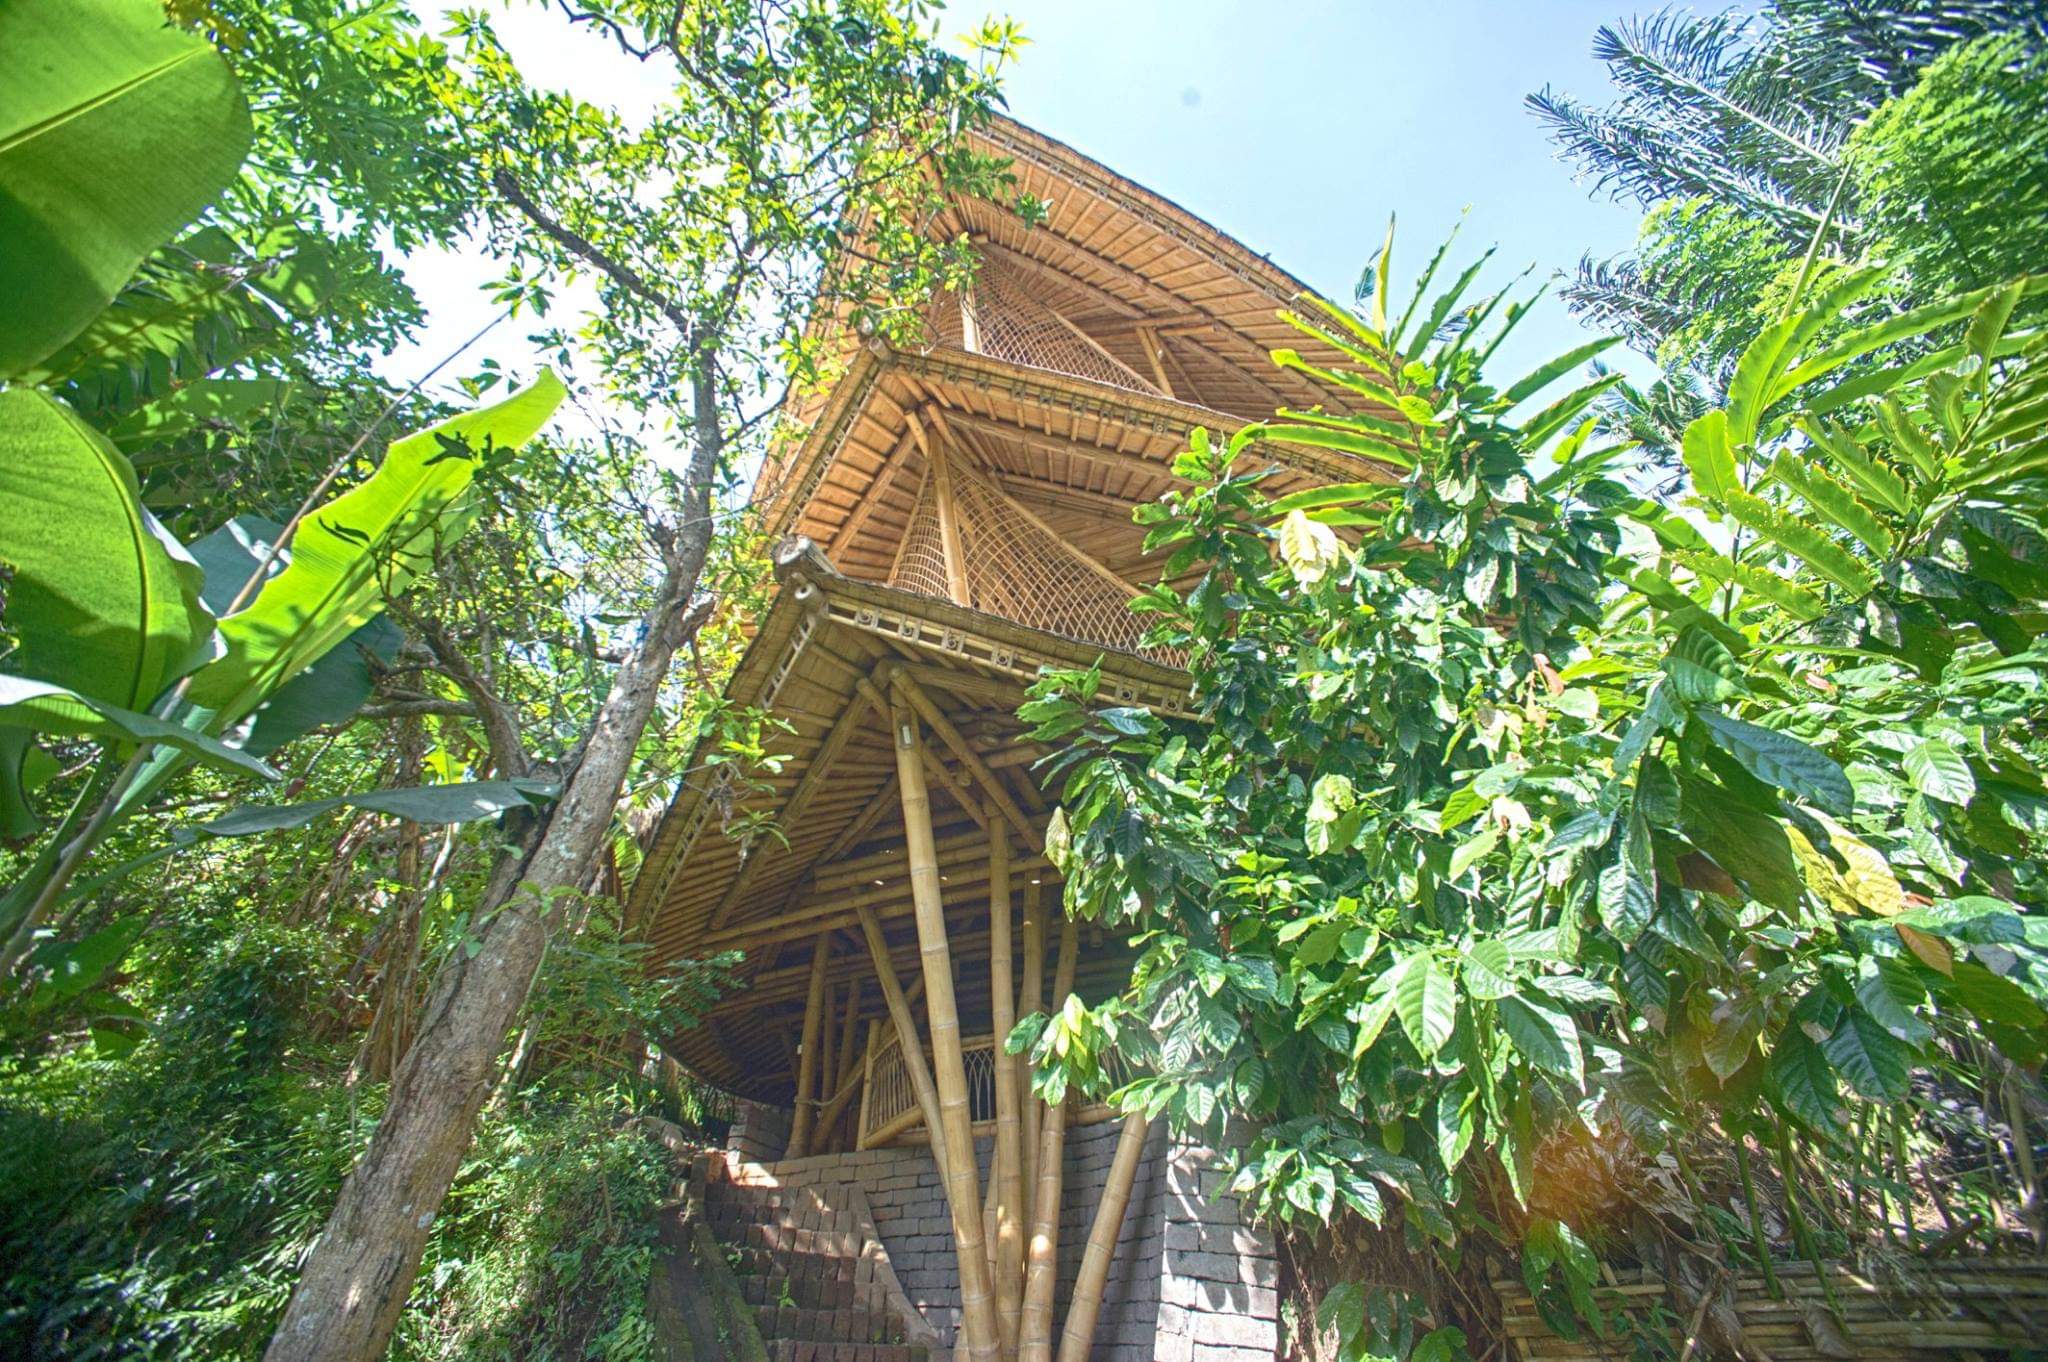 Las grandes estructuras al aire libre fueron creadas a partir de material local, natural y renovable, principalmente bambú, y el espacio abierto restante ha sido plantado con frutas orgánicas, huertas y arrozales.